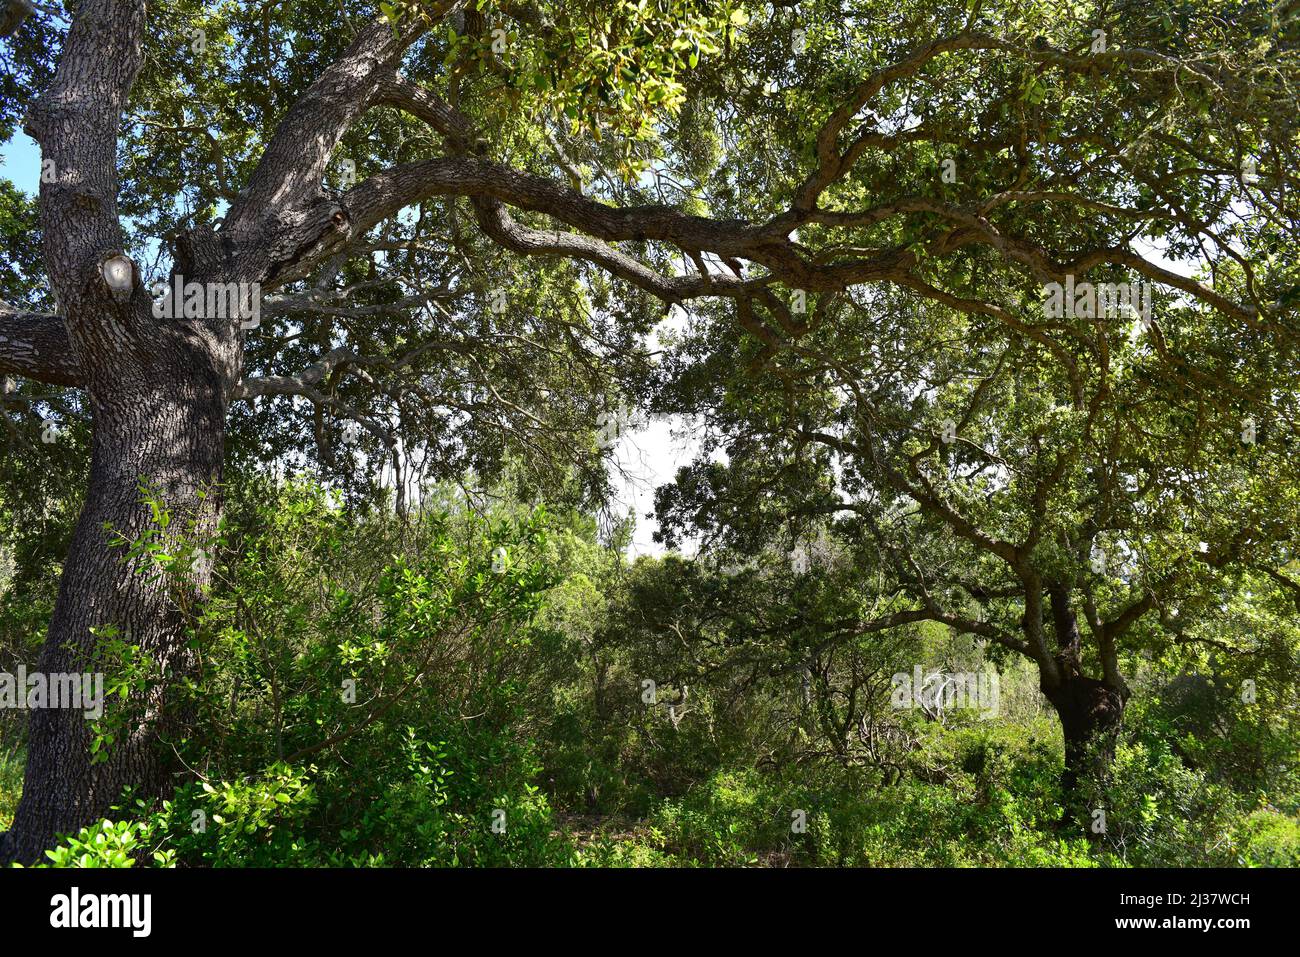 Immergrüne Eiche (Quercus ilex ilex) ist ein immergrüner Baum aus Südeuropa. Dieses Foto wurde auf Menorca, Balearen, Spanien, aufgenommen. Stockfoto